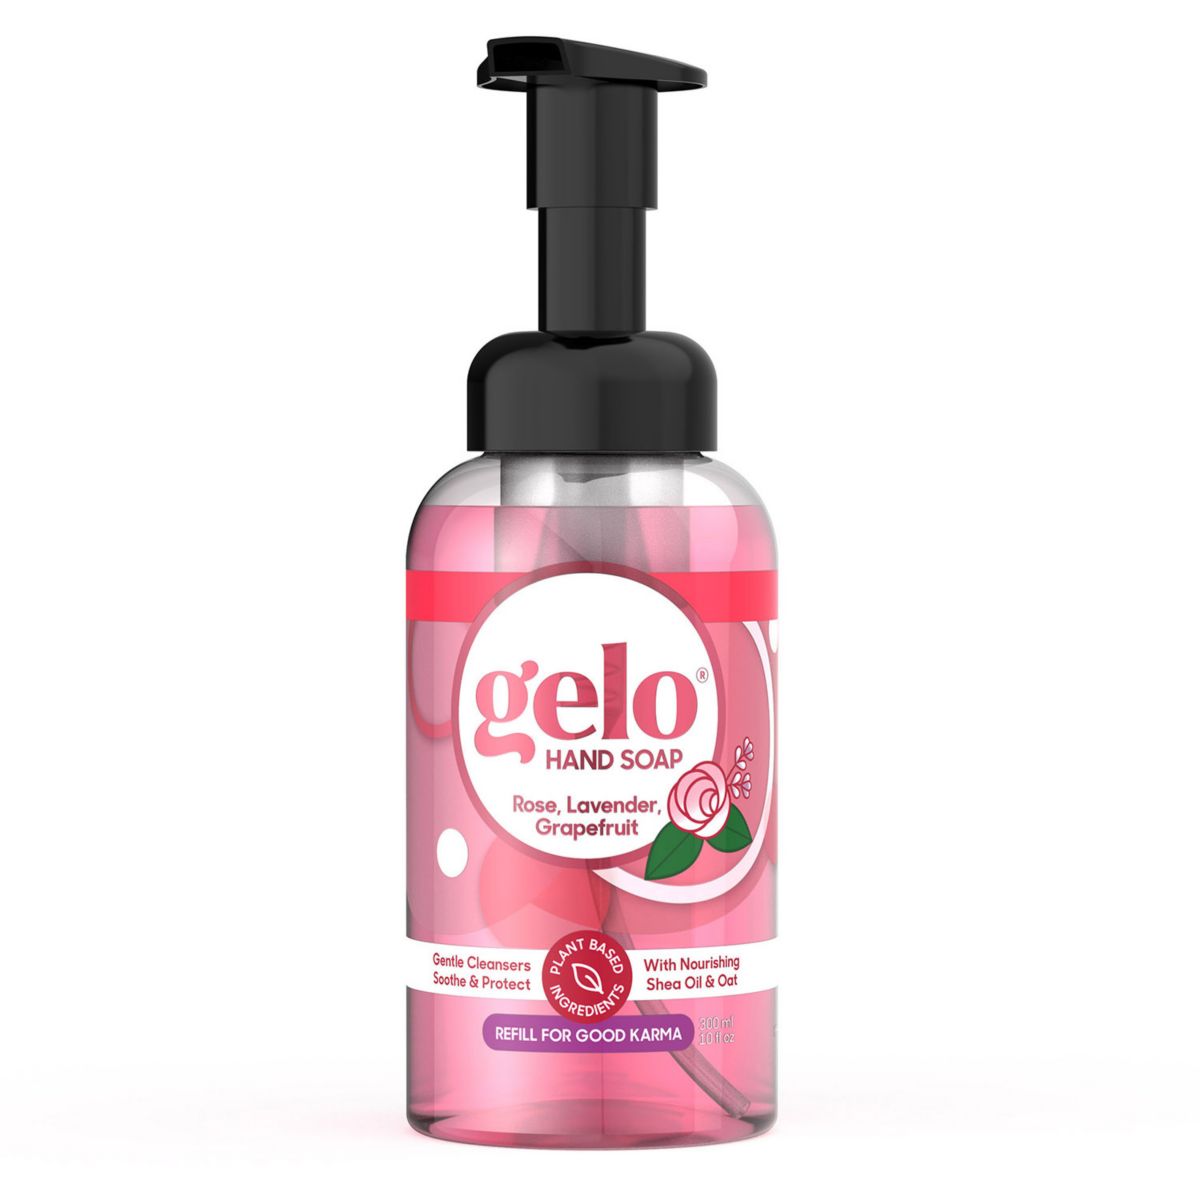 Пенящееся мыло для рук Gelo - роза, лаванда, грейпфрут, 10 жидких унций Gelo